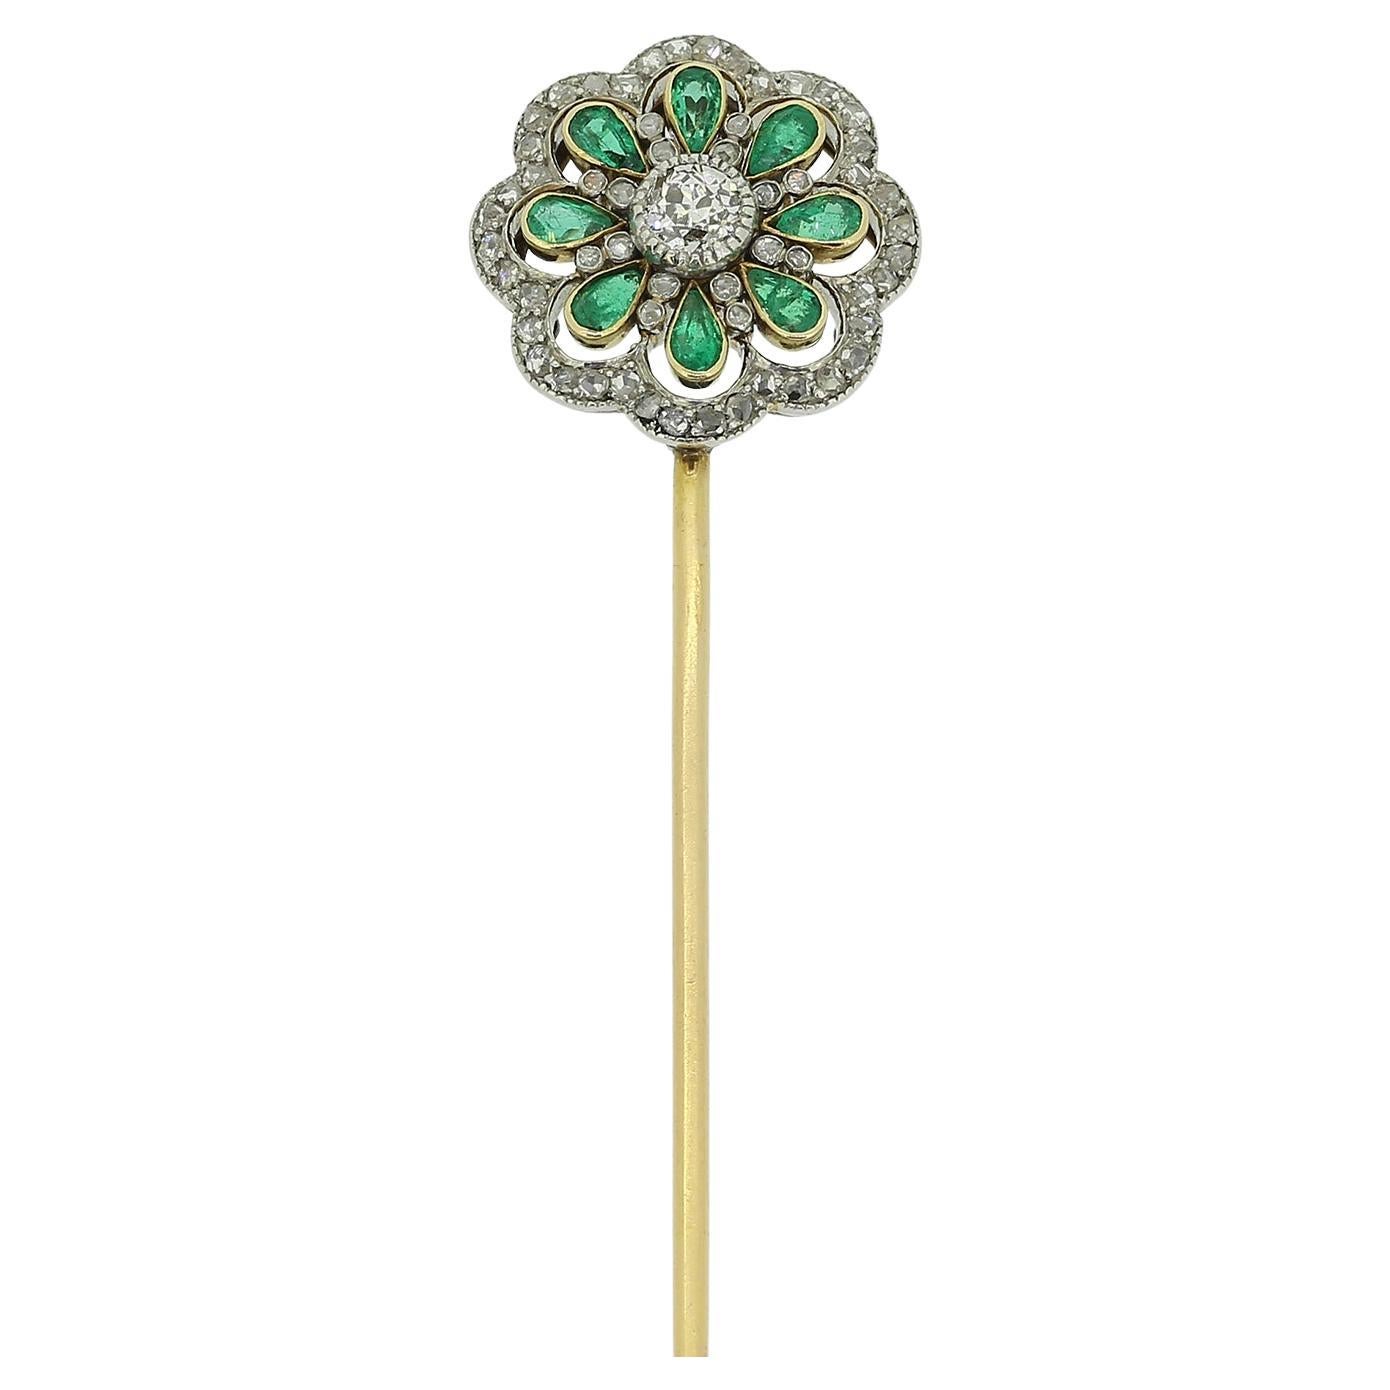 Edwardian Emerald and Diamond Jabot Pin